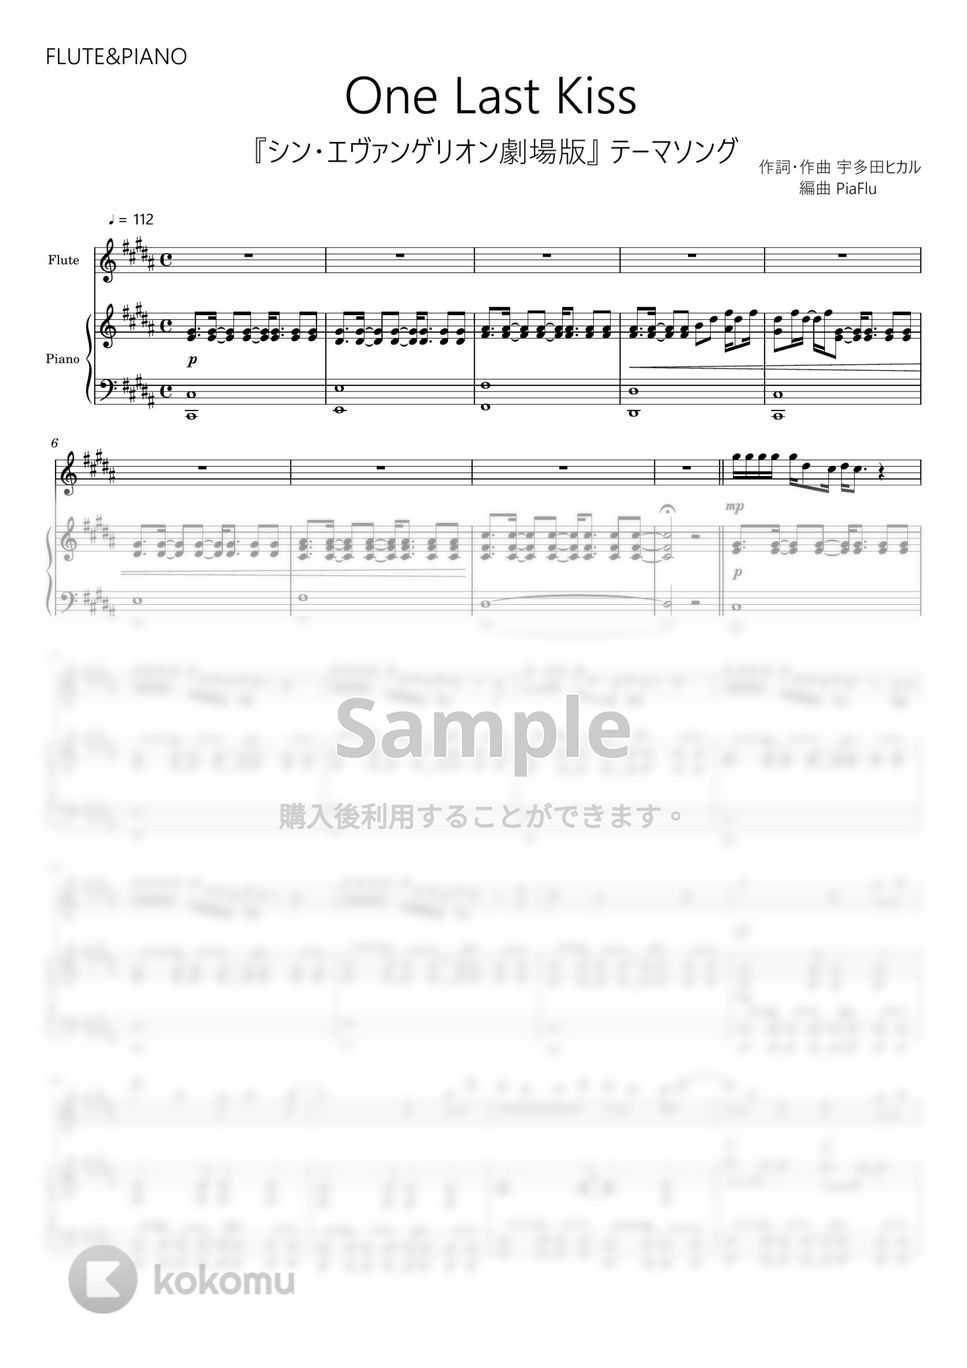 宇多田ヒカル - One Last Kiss (フルート&ピアノ伴奏 / 『シン・エヴァンゲリオン劇場版』テーマソング) by PiaFlu